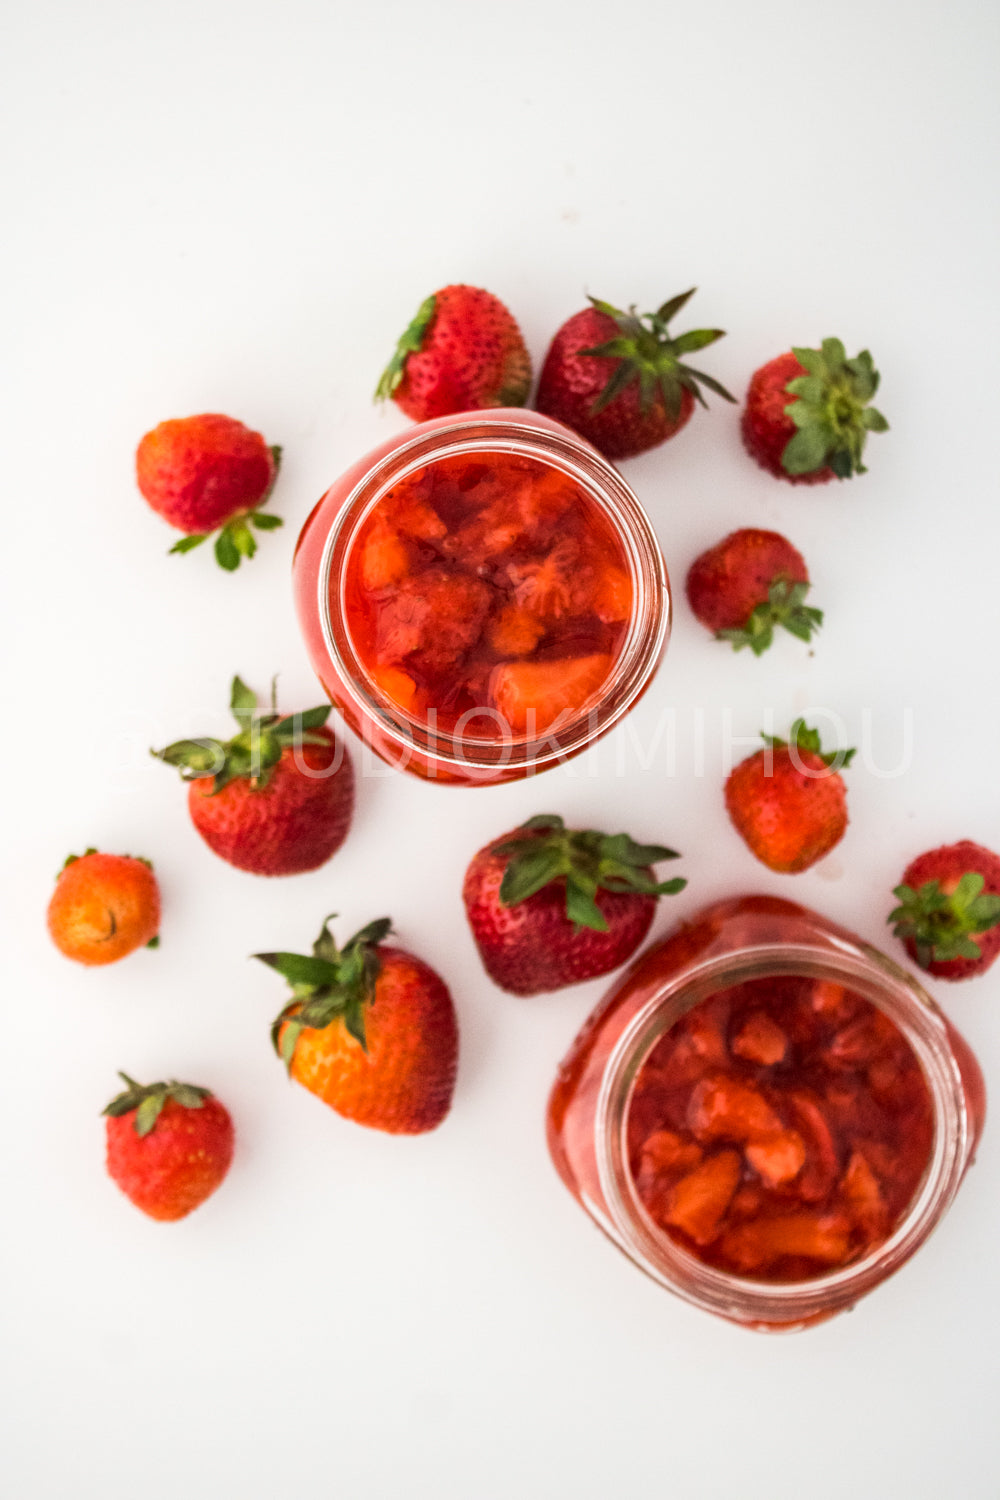 PLR - Homemade Strawberry Preserves